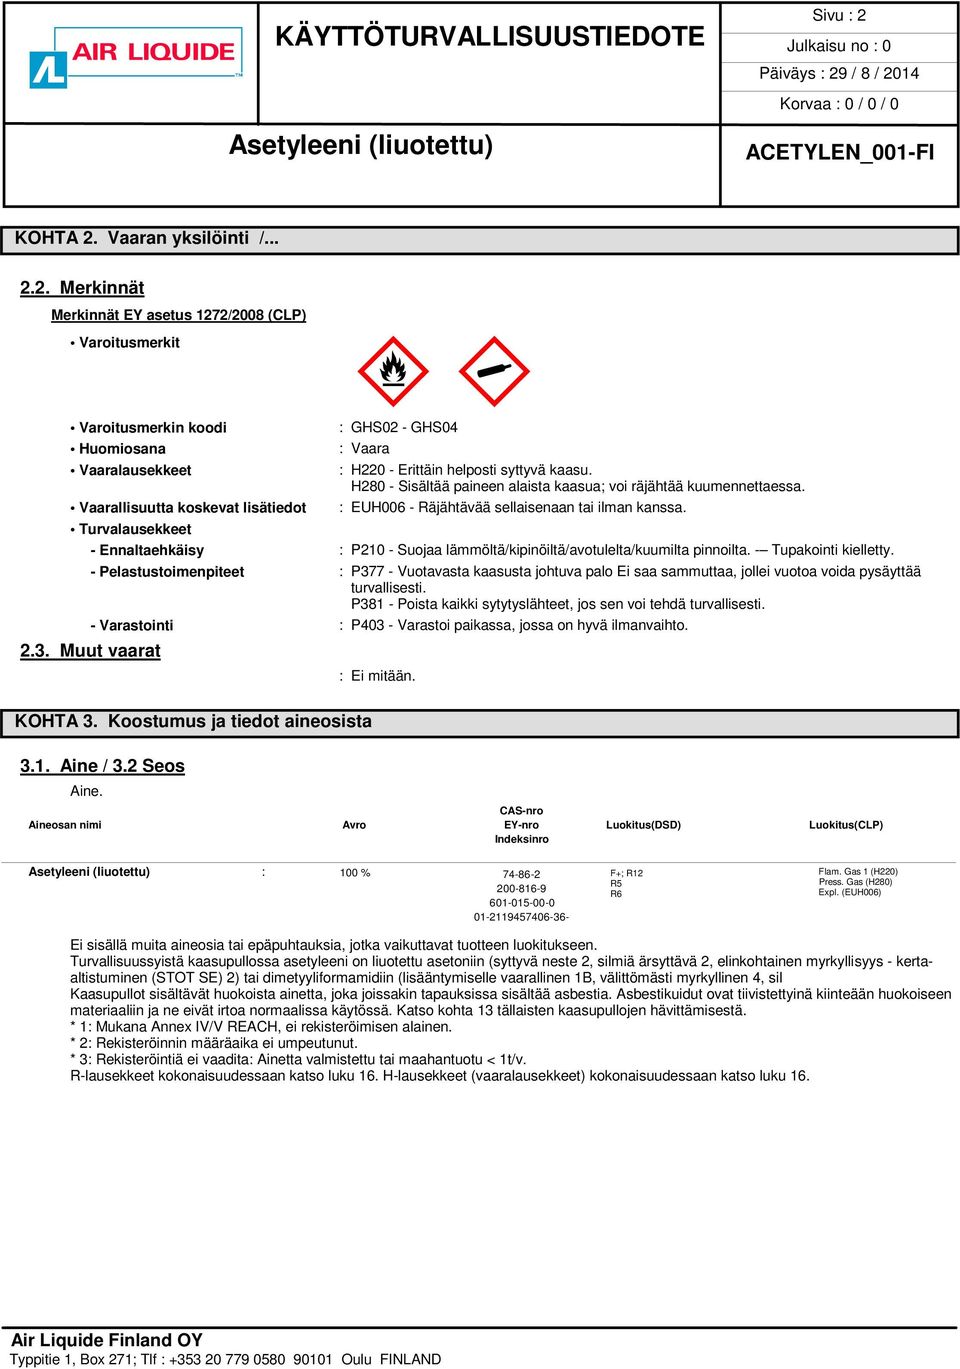 Turvalausekkeet - Ennaltaehkäisy : P210 - Suojaa lämmöltä/kipinöiltä/avotulelta/kuumilta pinnoilta. - Tupakointi kielletty.